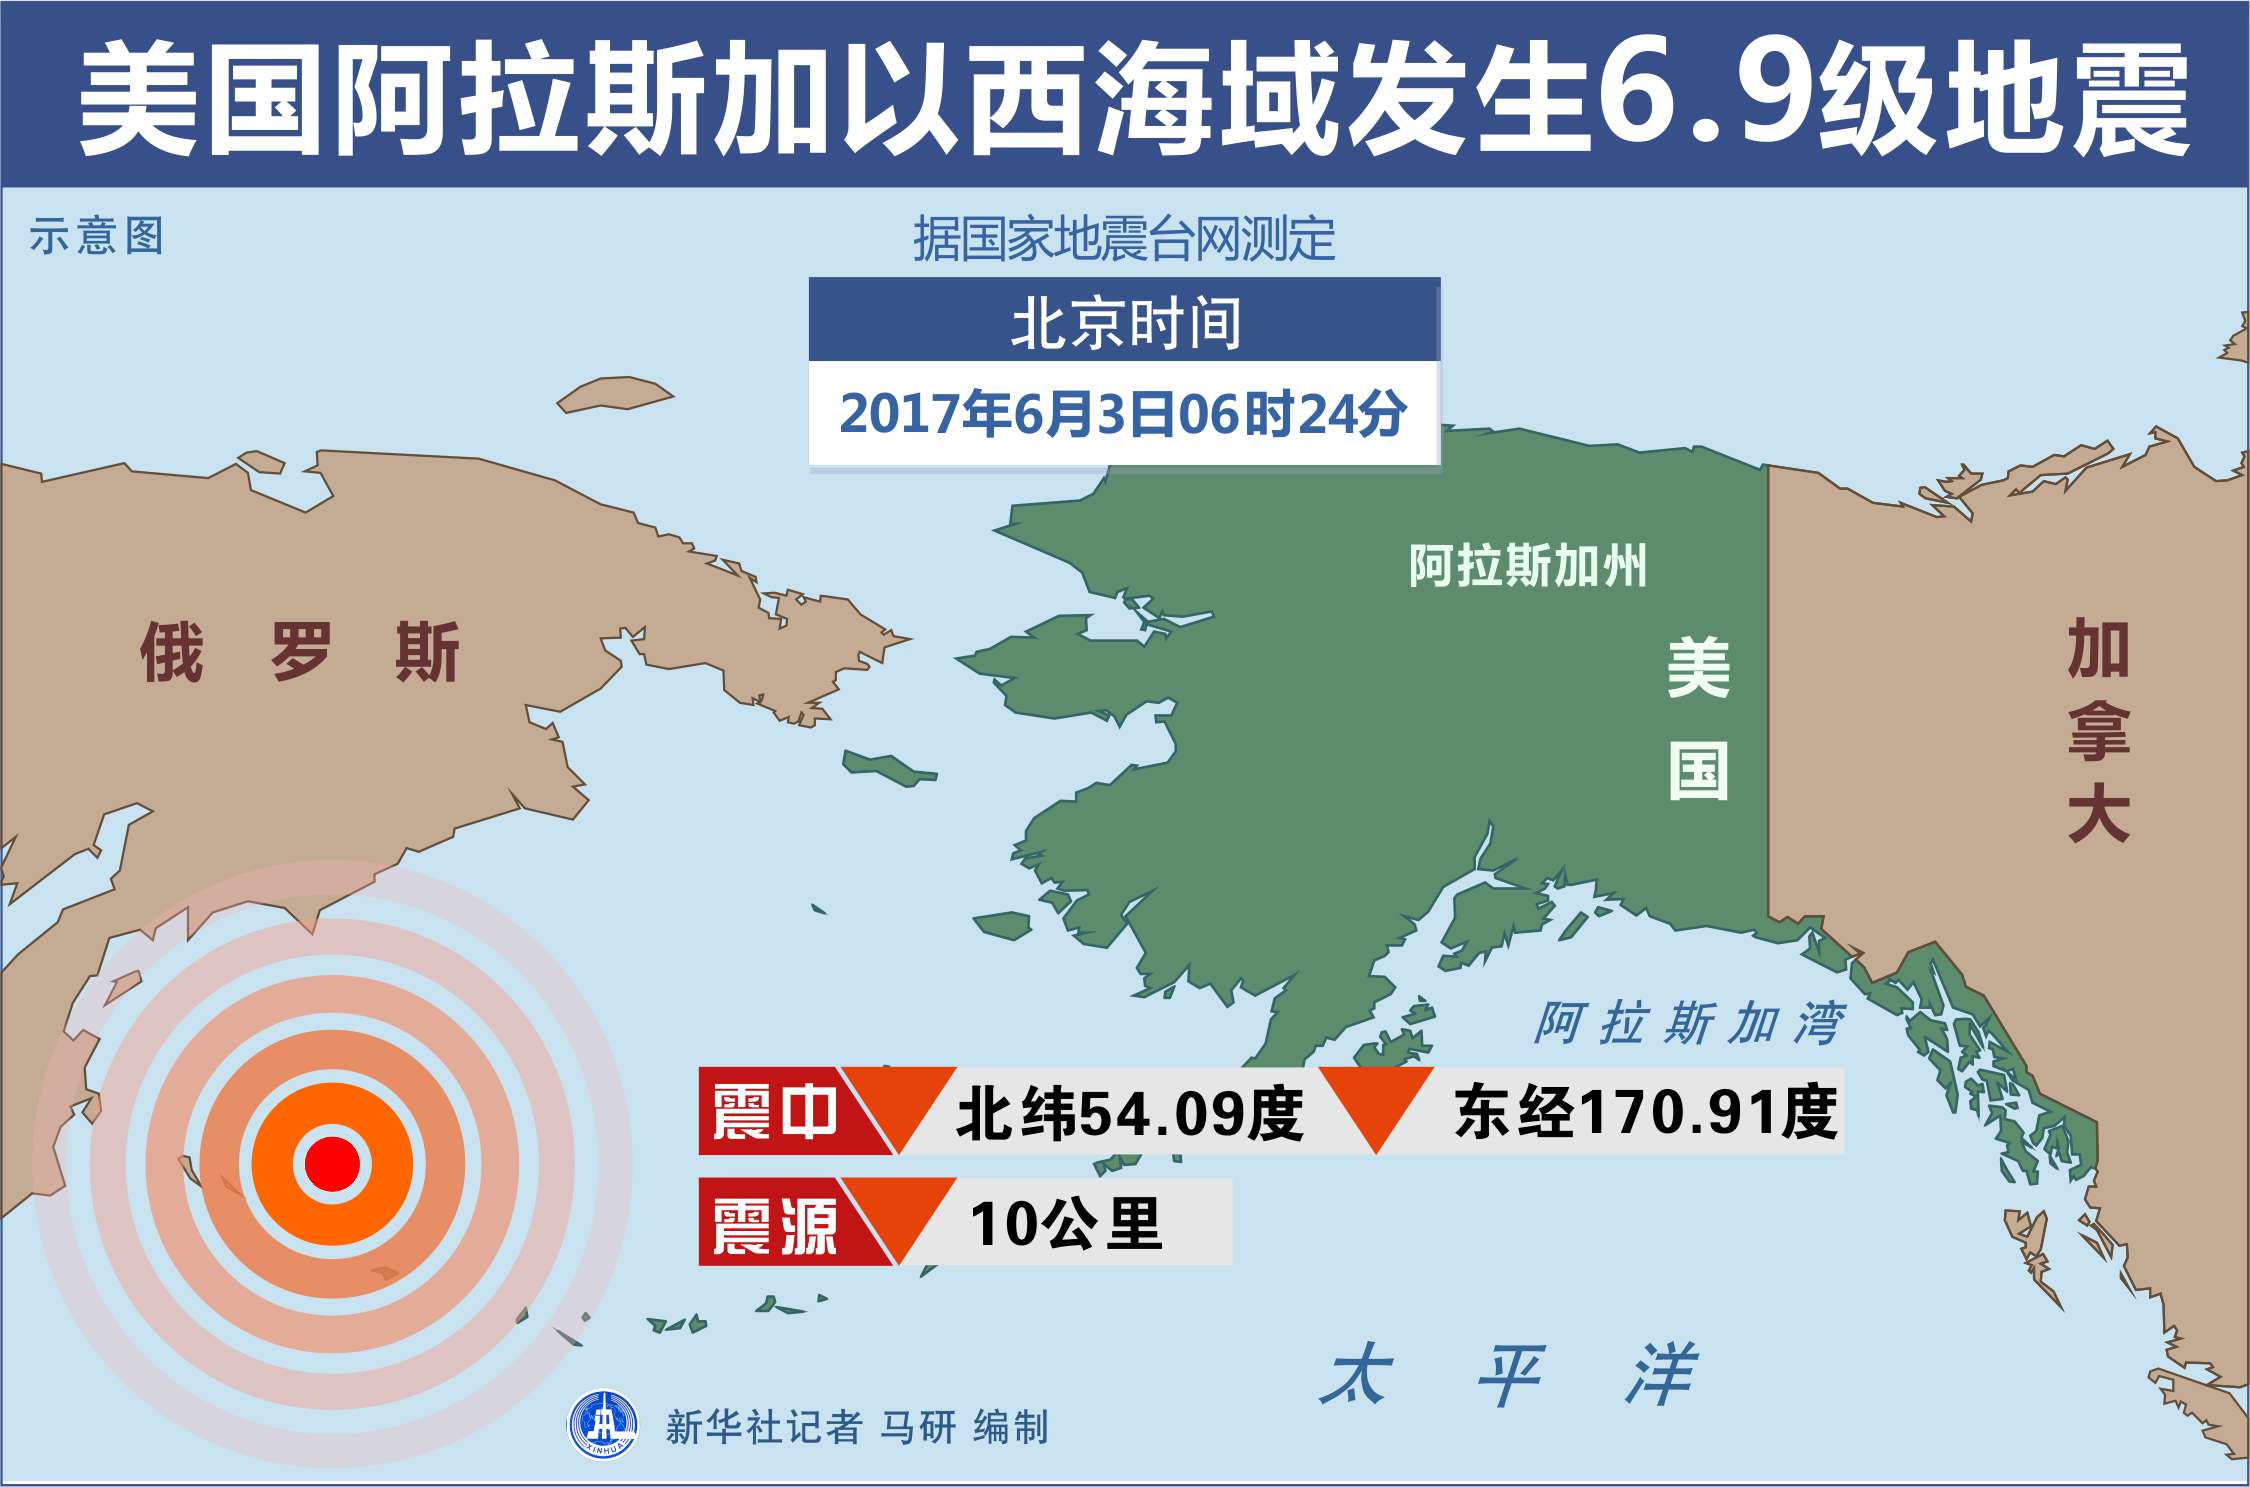 美国阿拉斯加以西海域发生6.9级地震-时政新闻-浙江在线